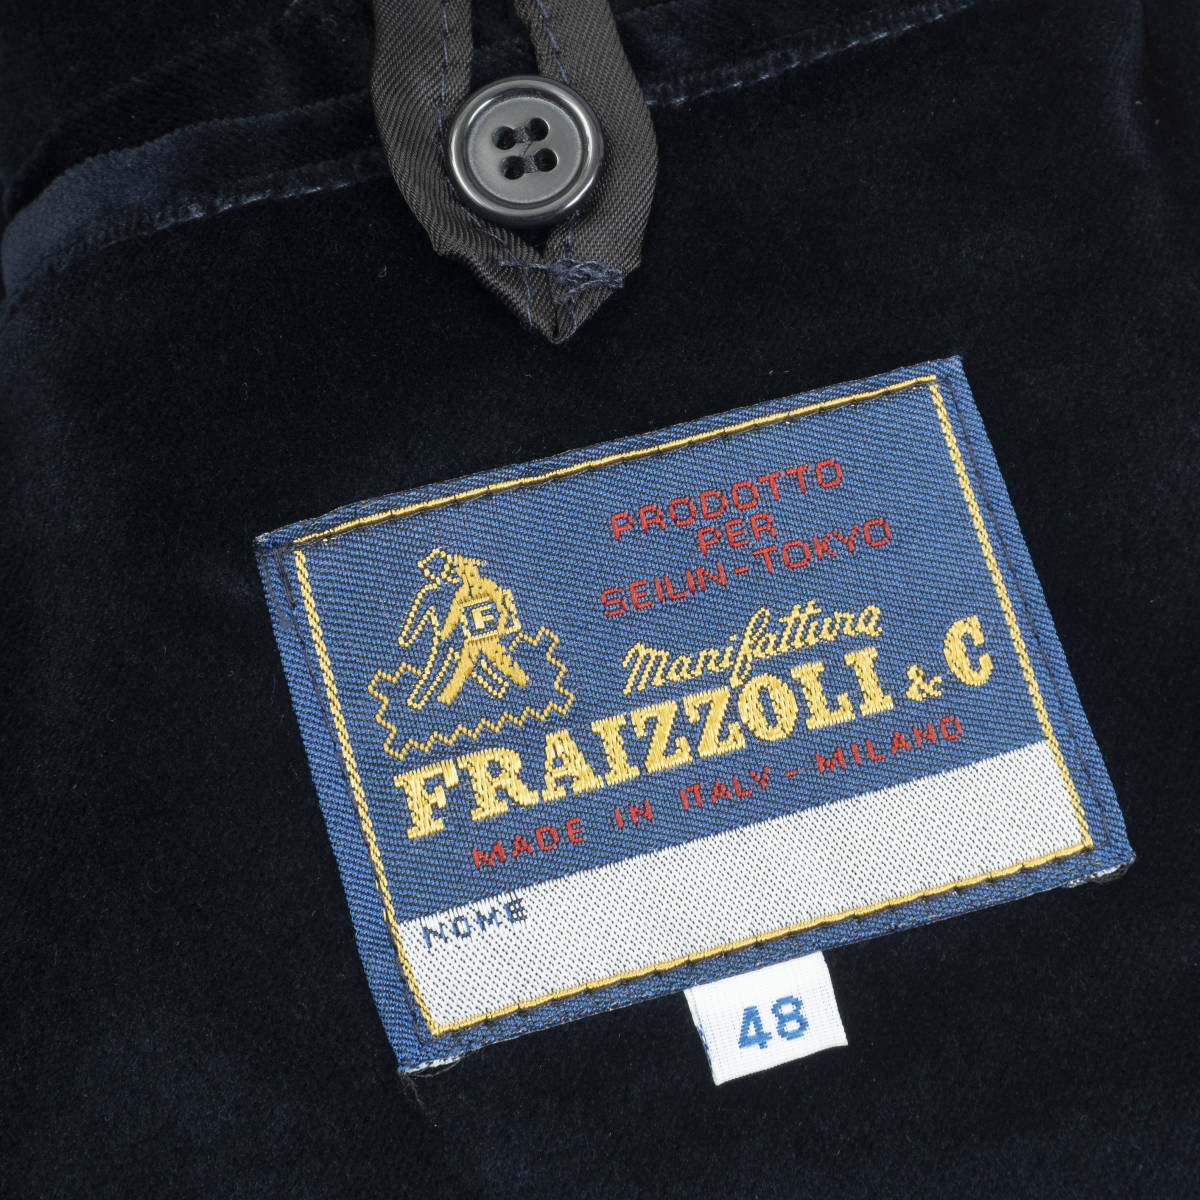 ITALY製高級ベロアジャケット『FRAIZZOLI&C』48(L相当) ネイビー 聖林公司 ハリウッドランチマーケット メンズ 管理9107_画像6